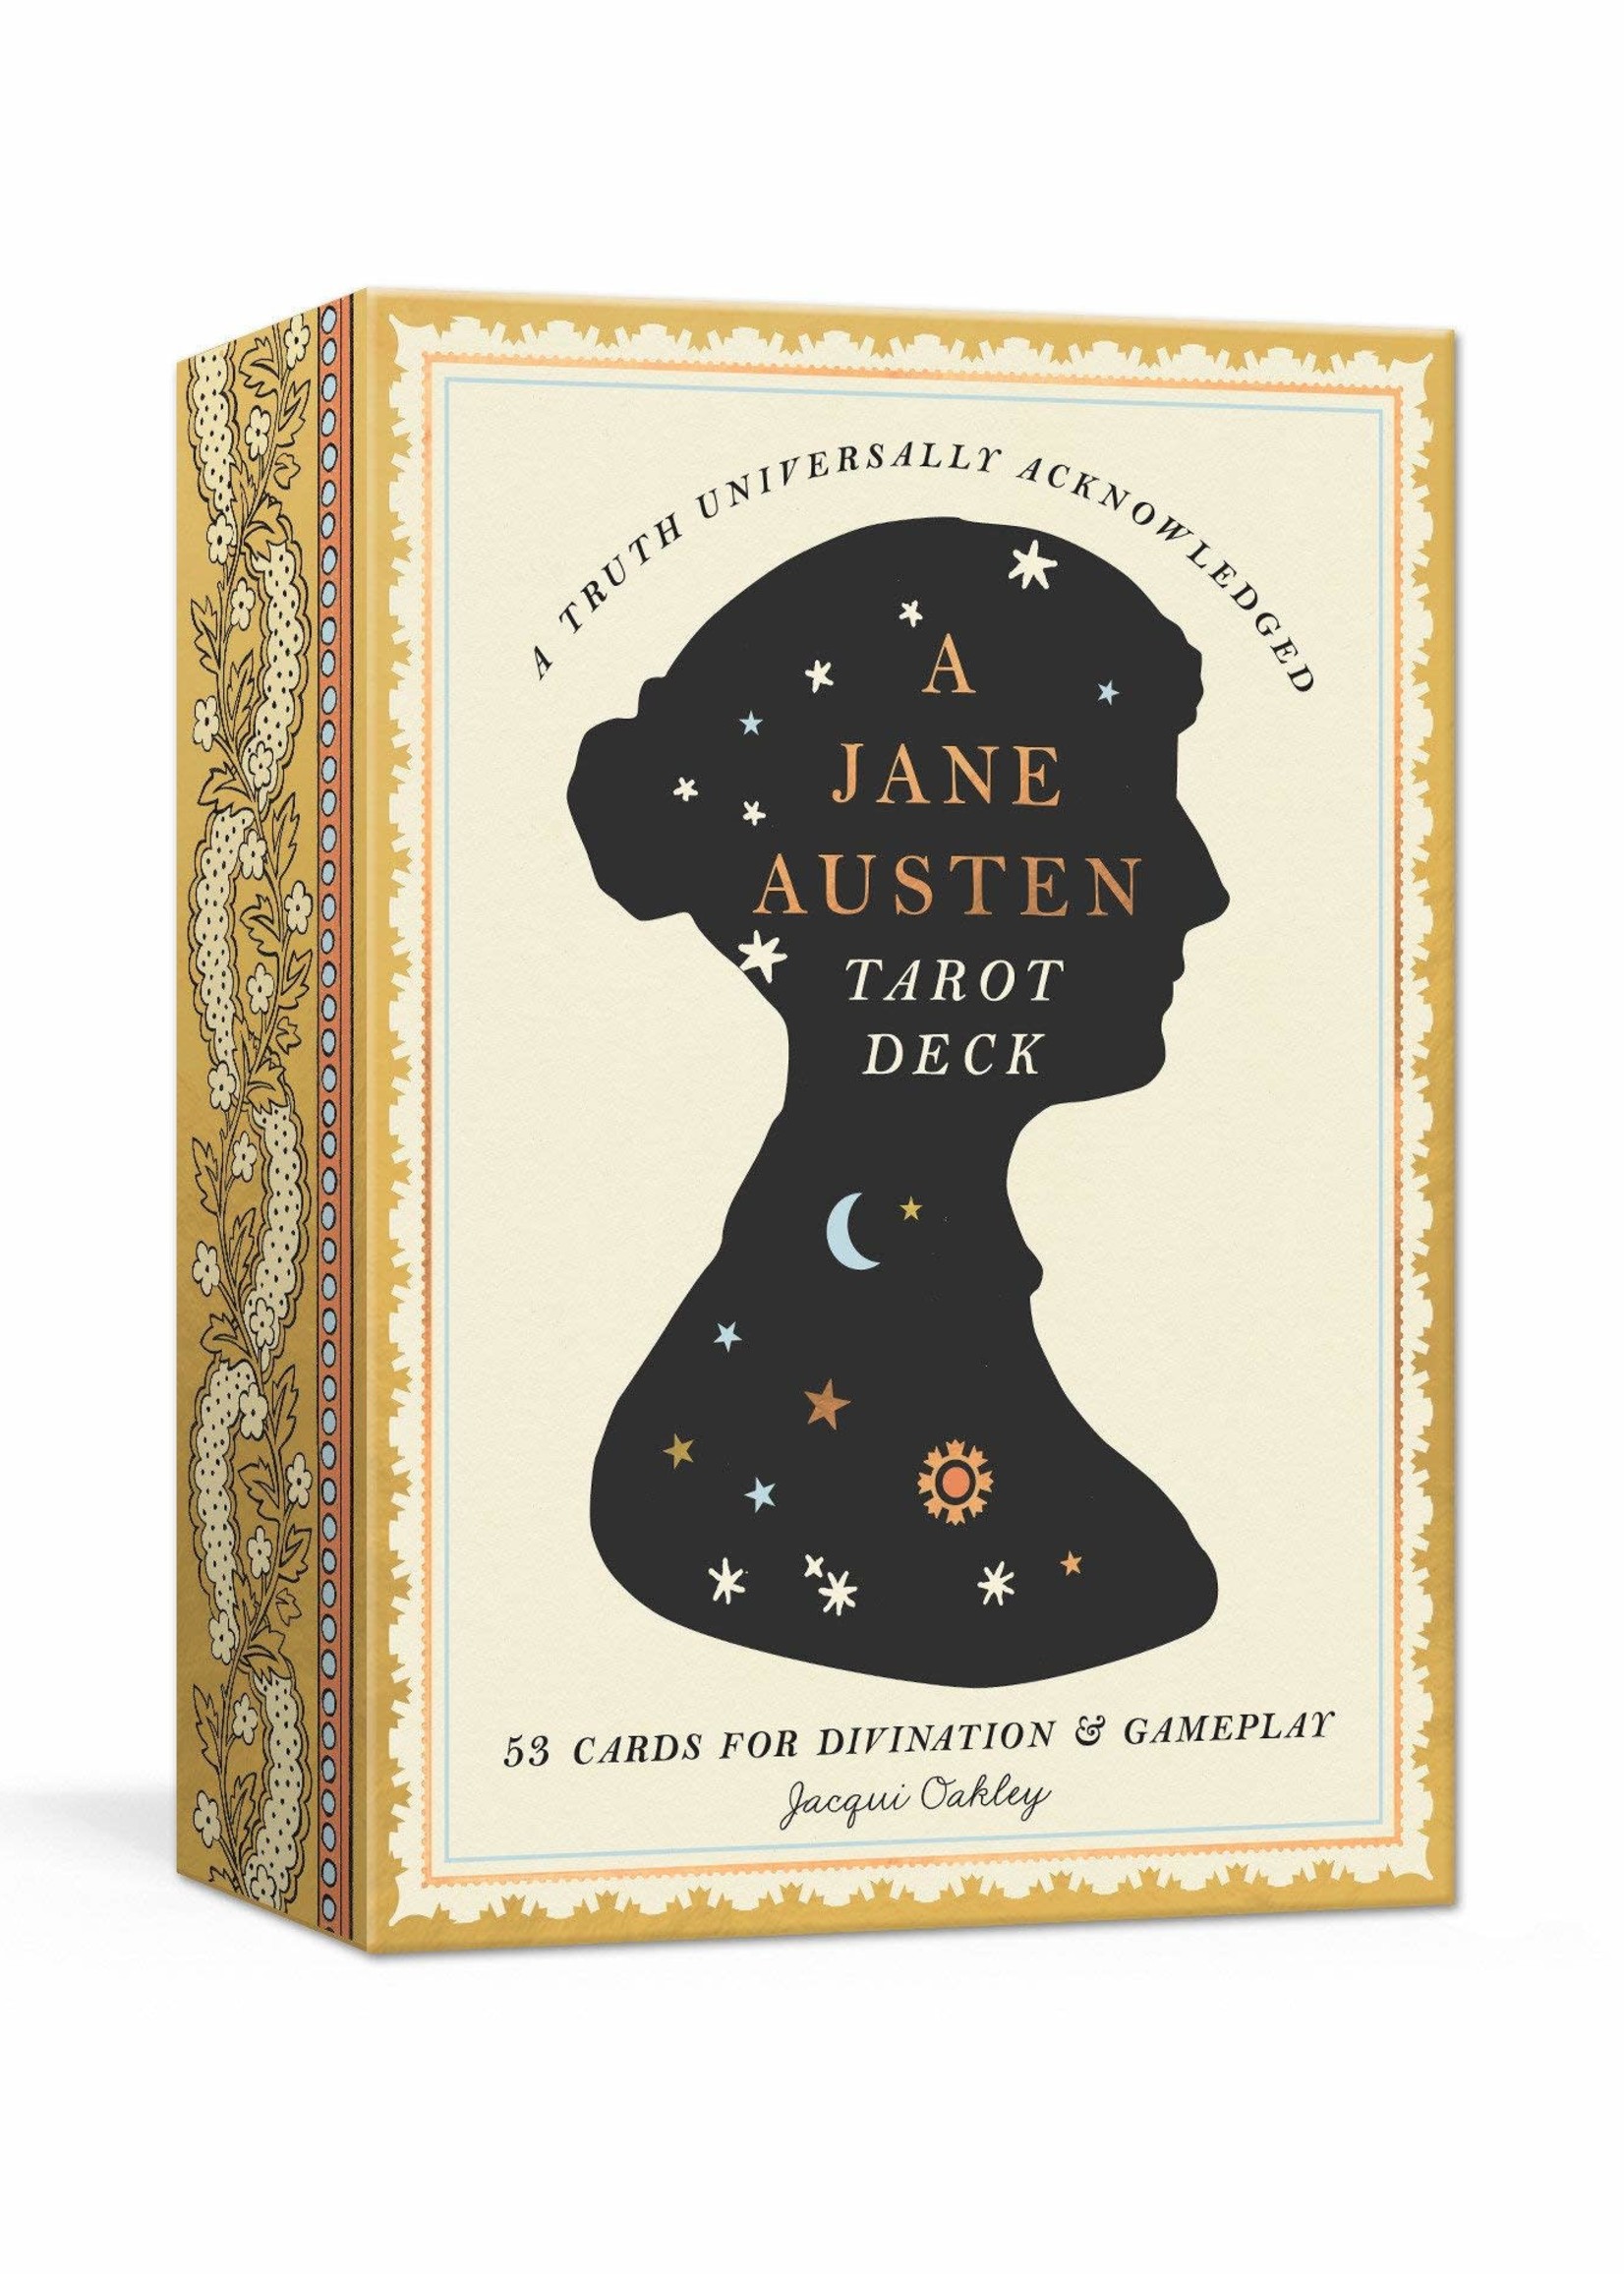 DECK A Jane Austen Tarot Deck